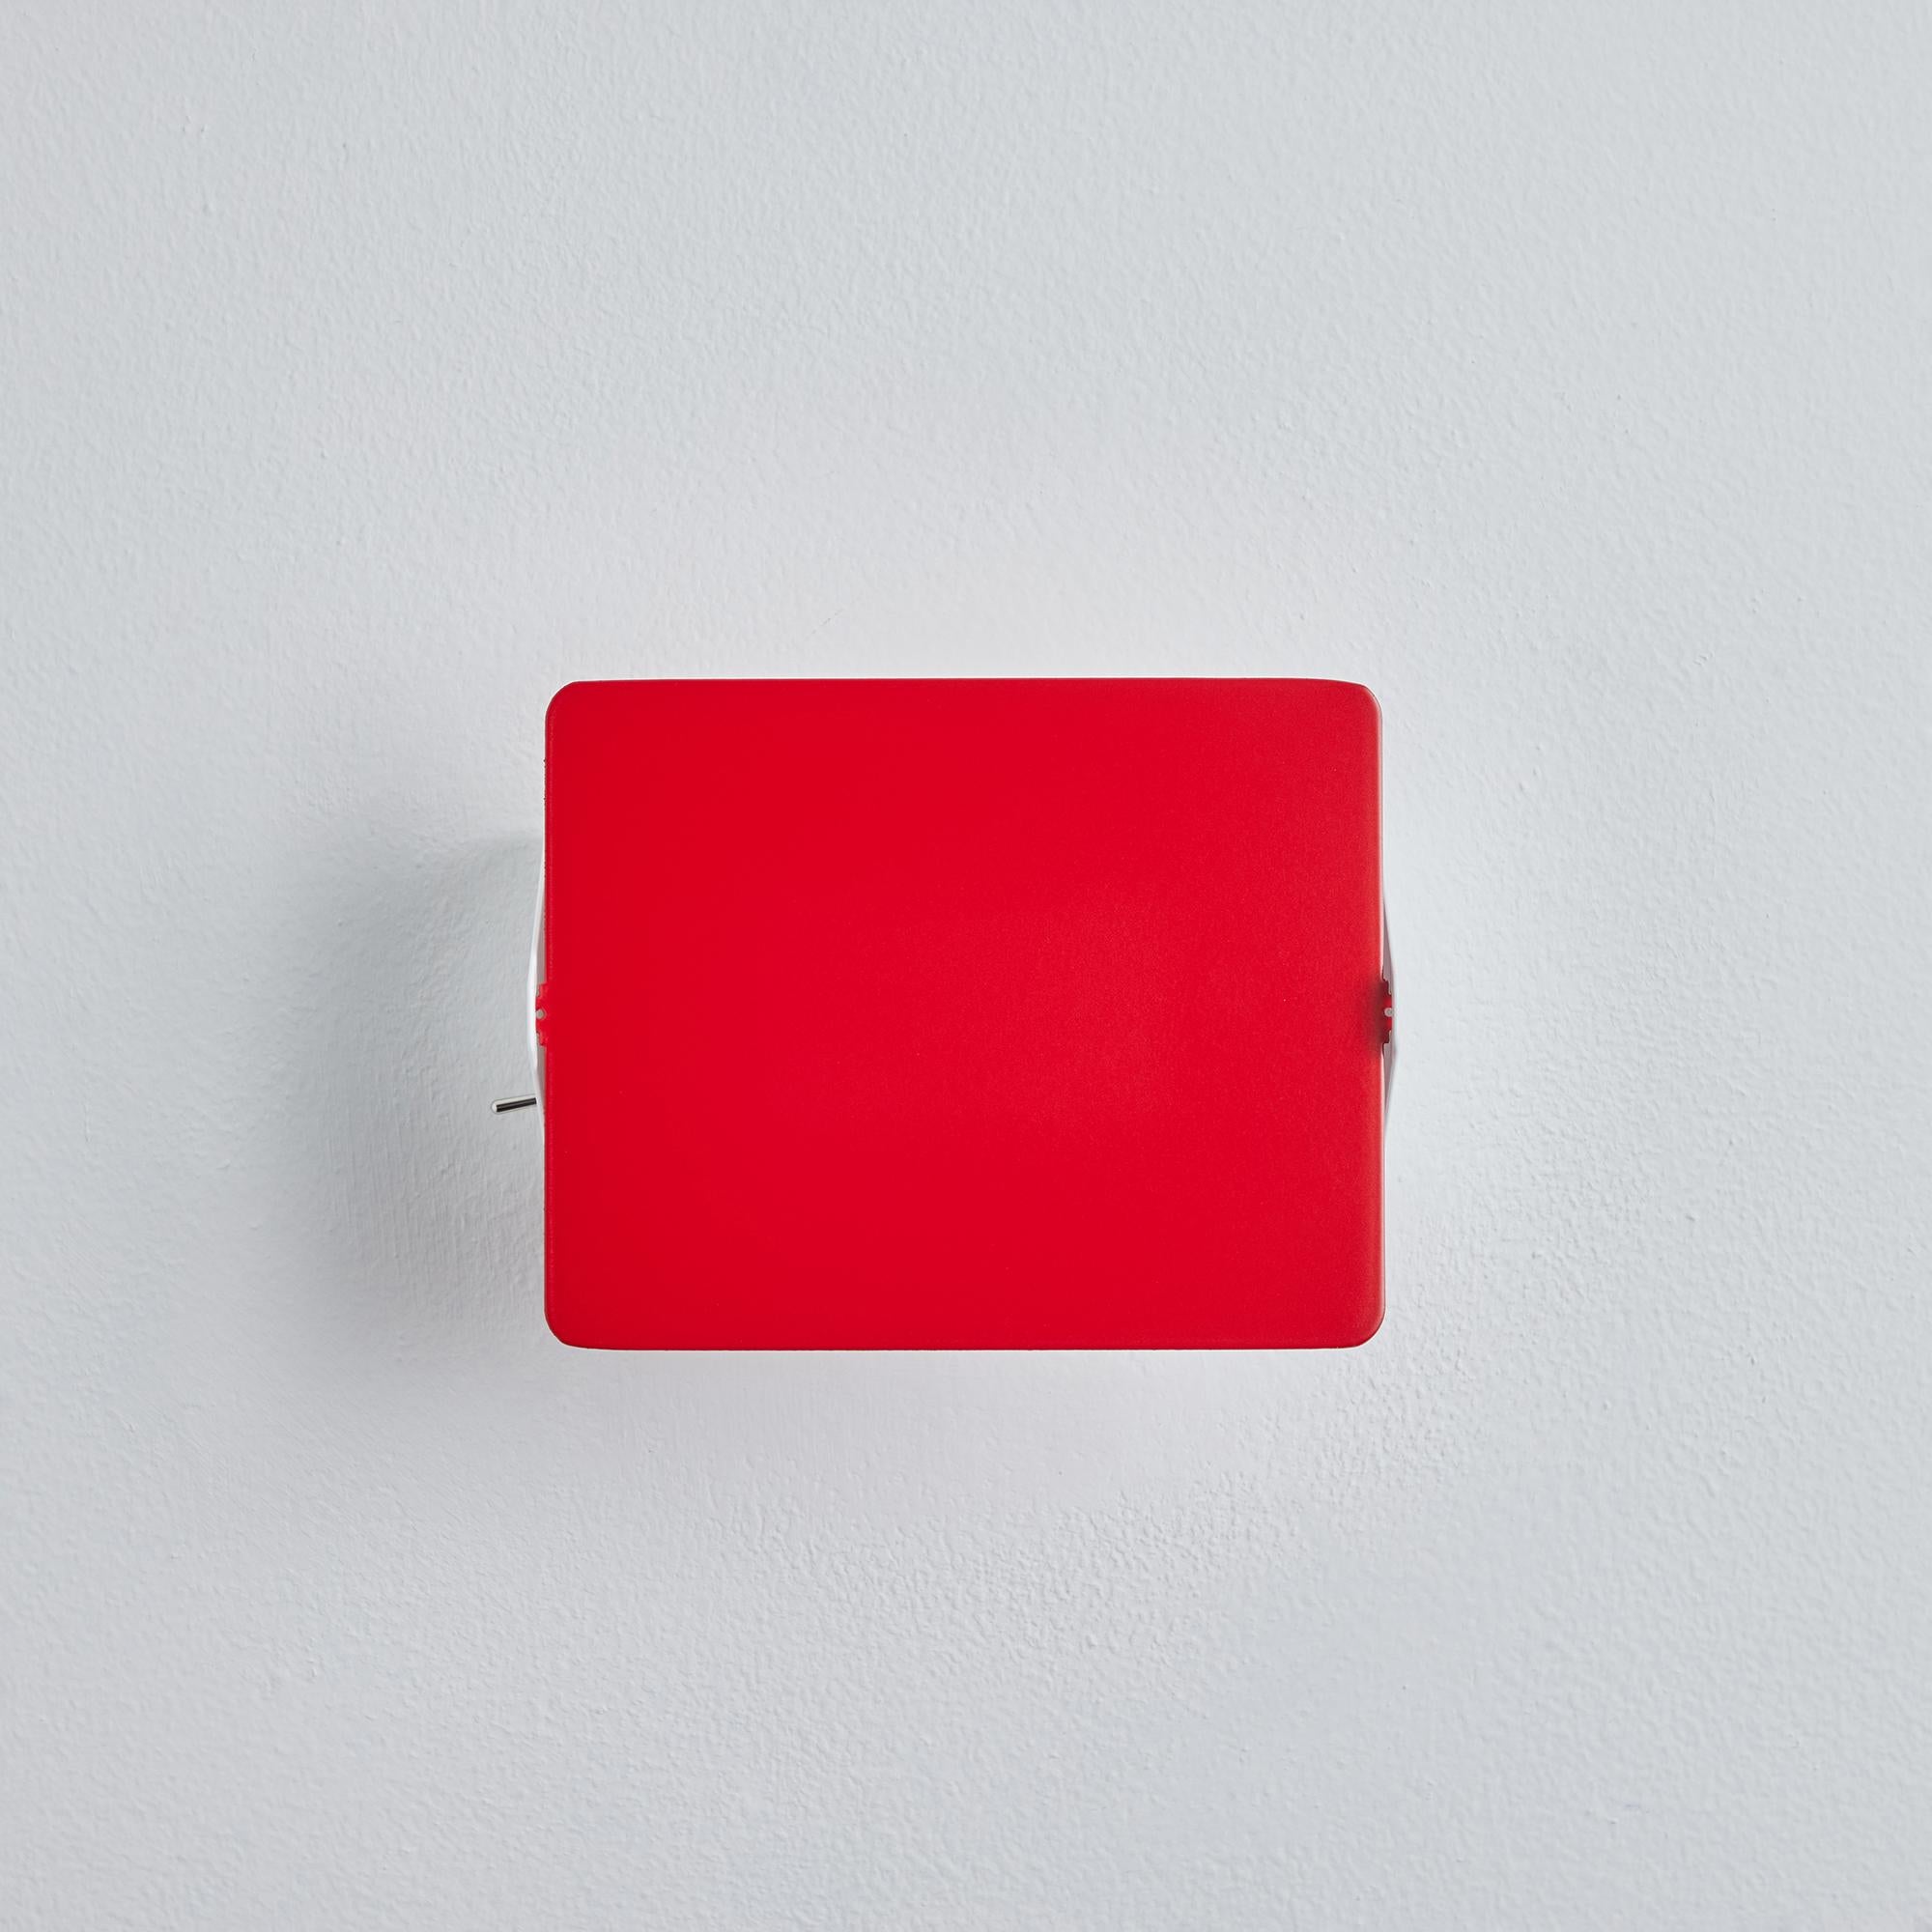 Ein Paar Charlotte Perriand 'Applique Á Volet Pivotant' Wandleuchten in rot. Ein klares und ikonisches Design aus rot und weiß lackiertem Metall. Ursprünglich in den 1950er Jahren als ikonische CP1 entworfen, werden diese neu produzierten,